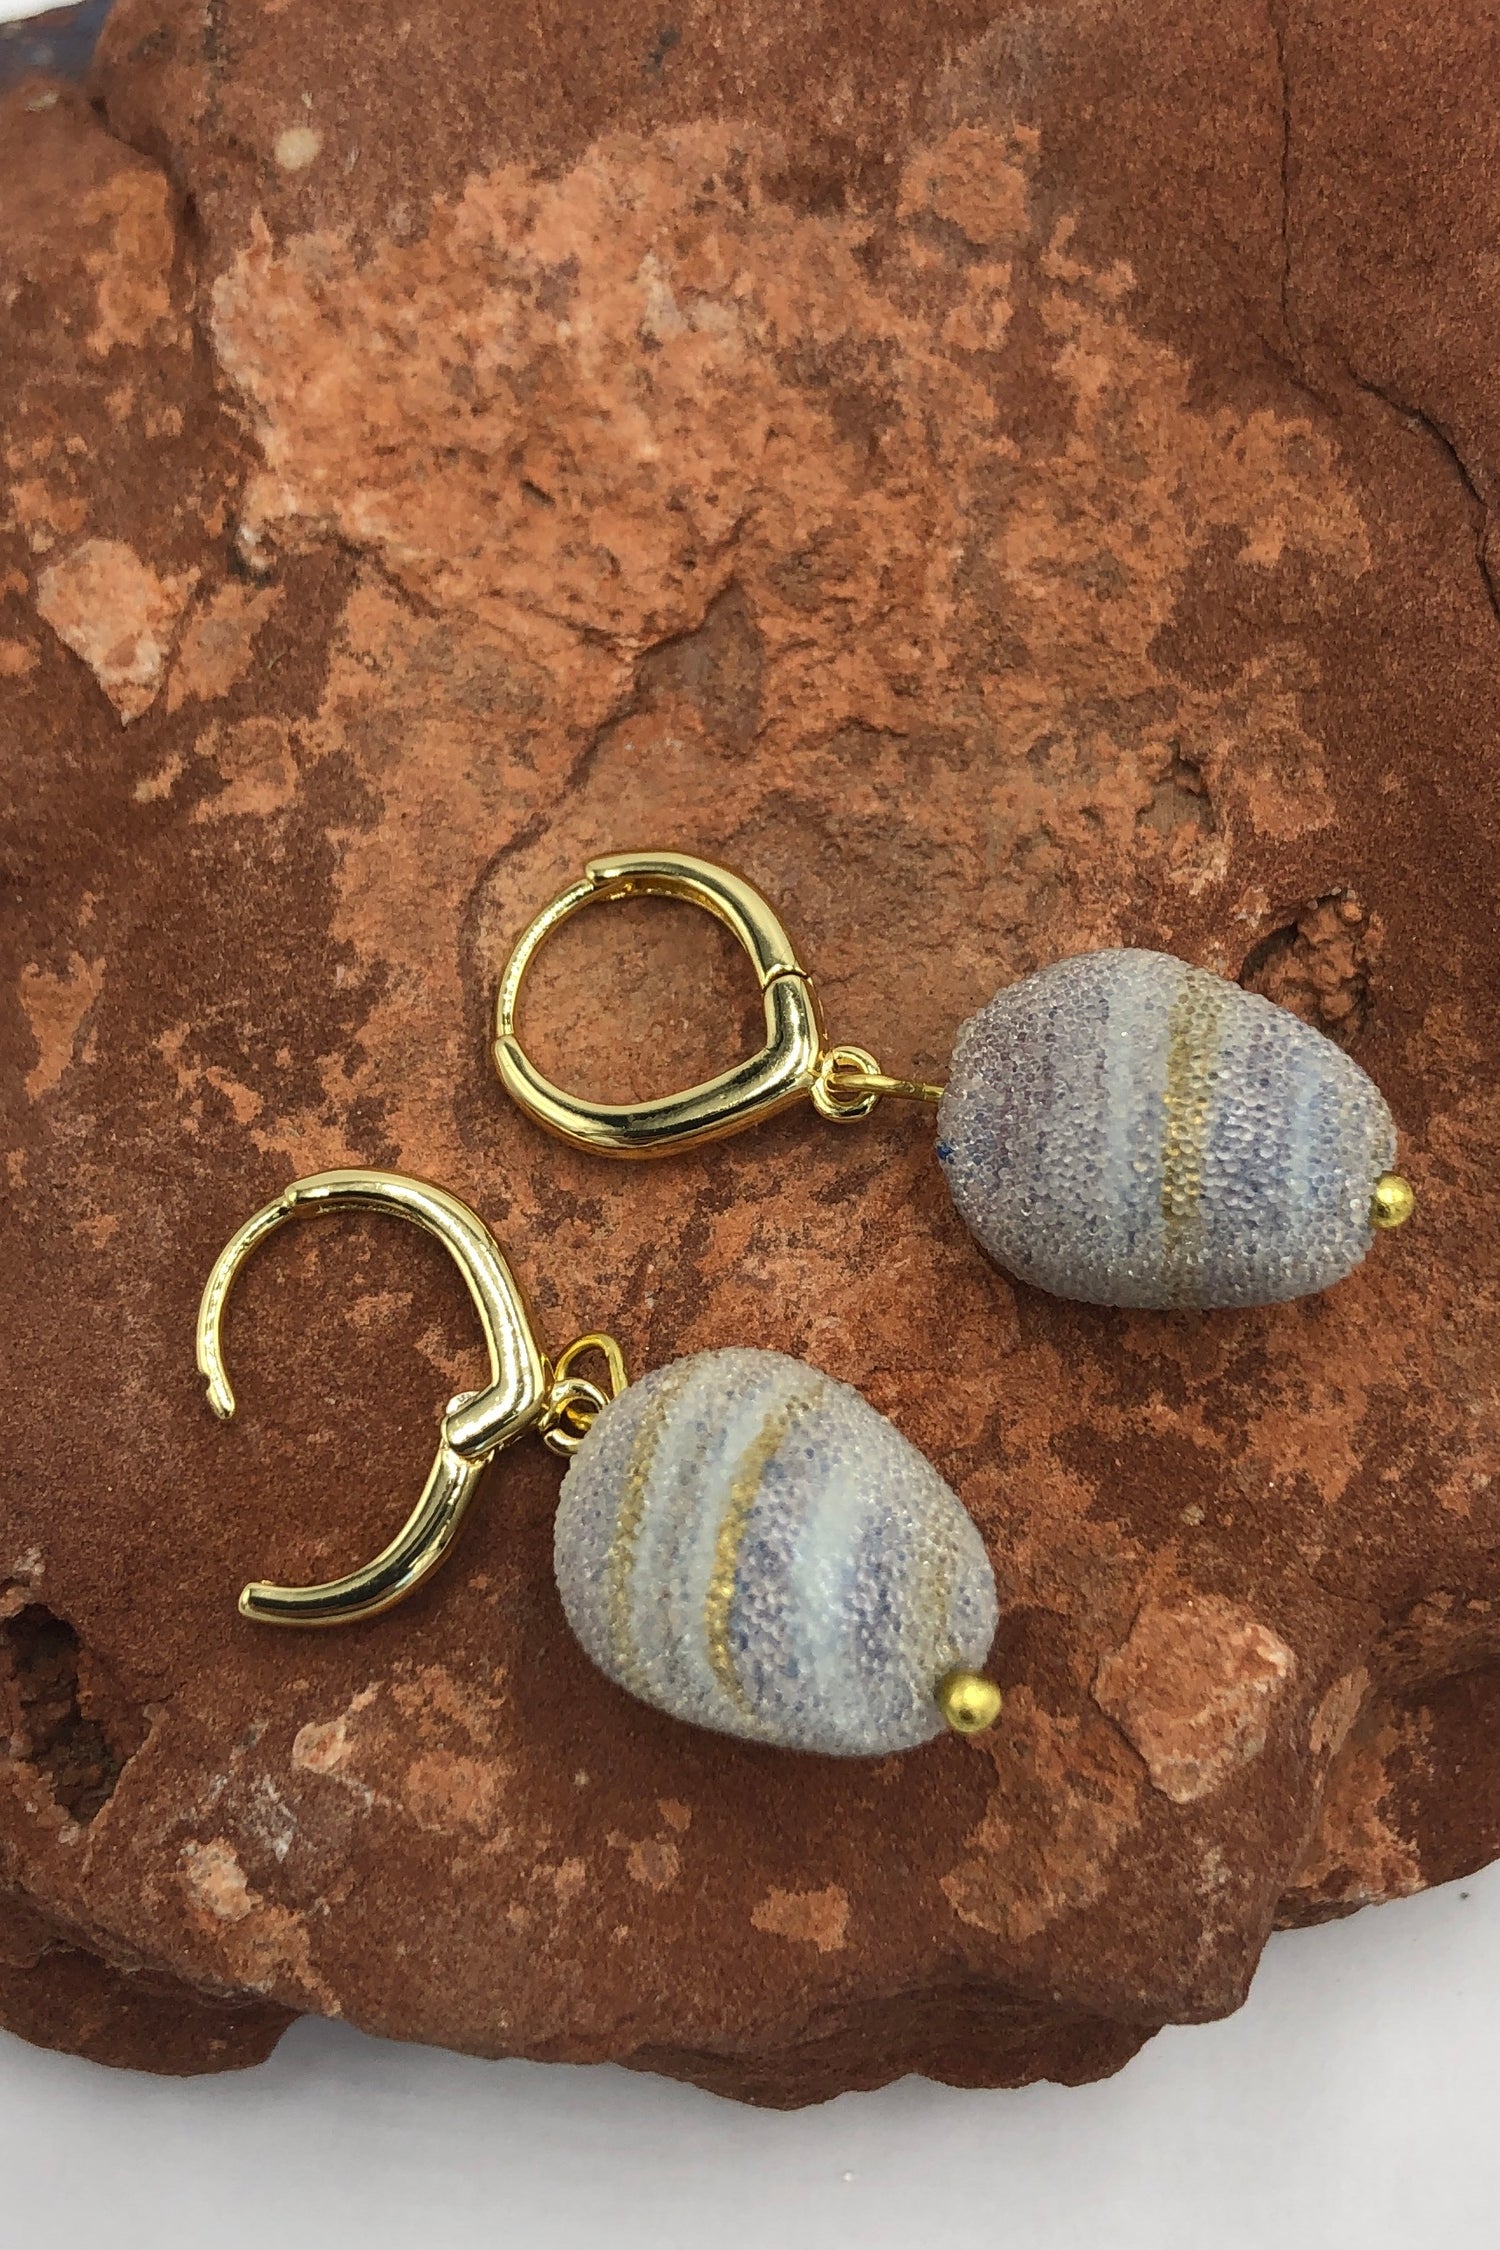 purple and gold swirl earrings on a rock